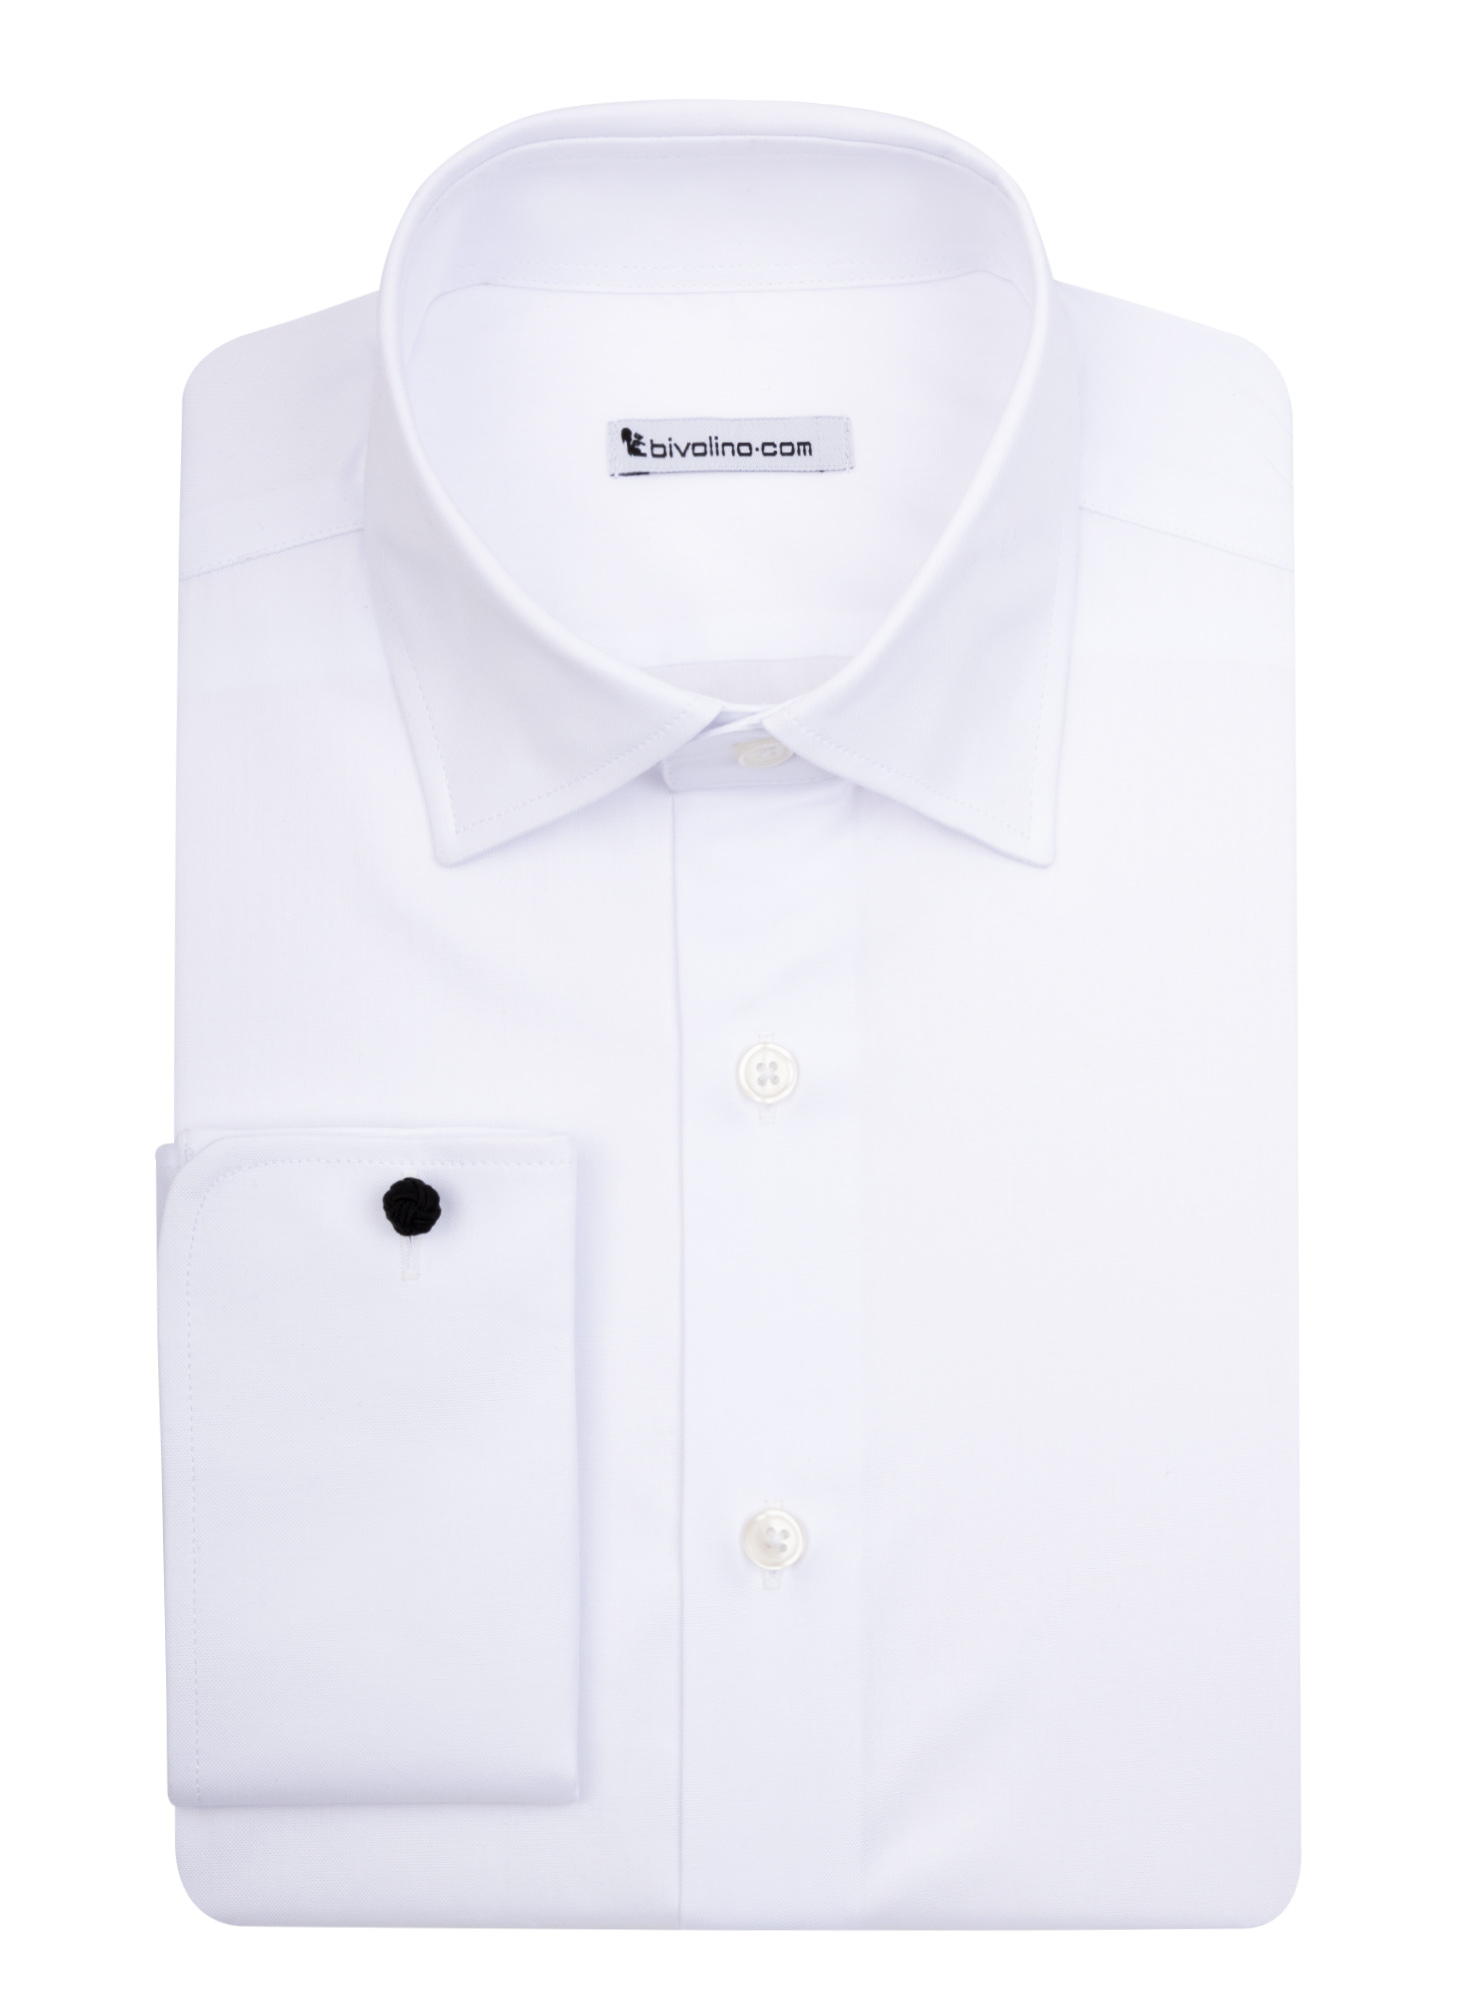 UDINE - chemise PinPoint Blanc - KIWI 1